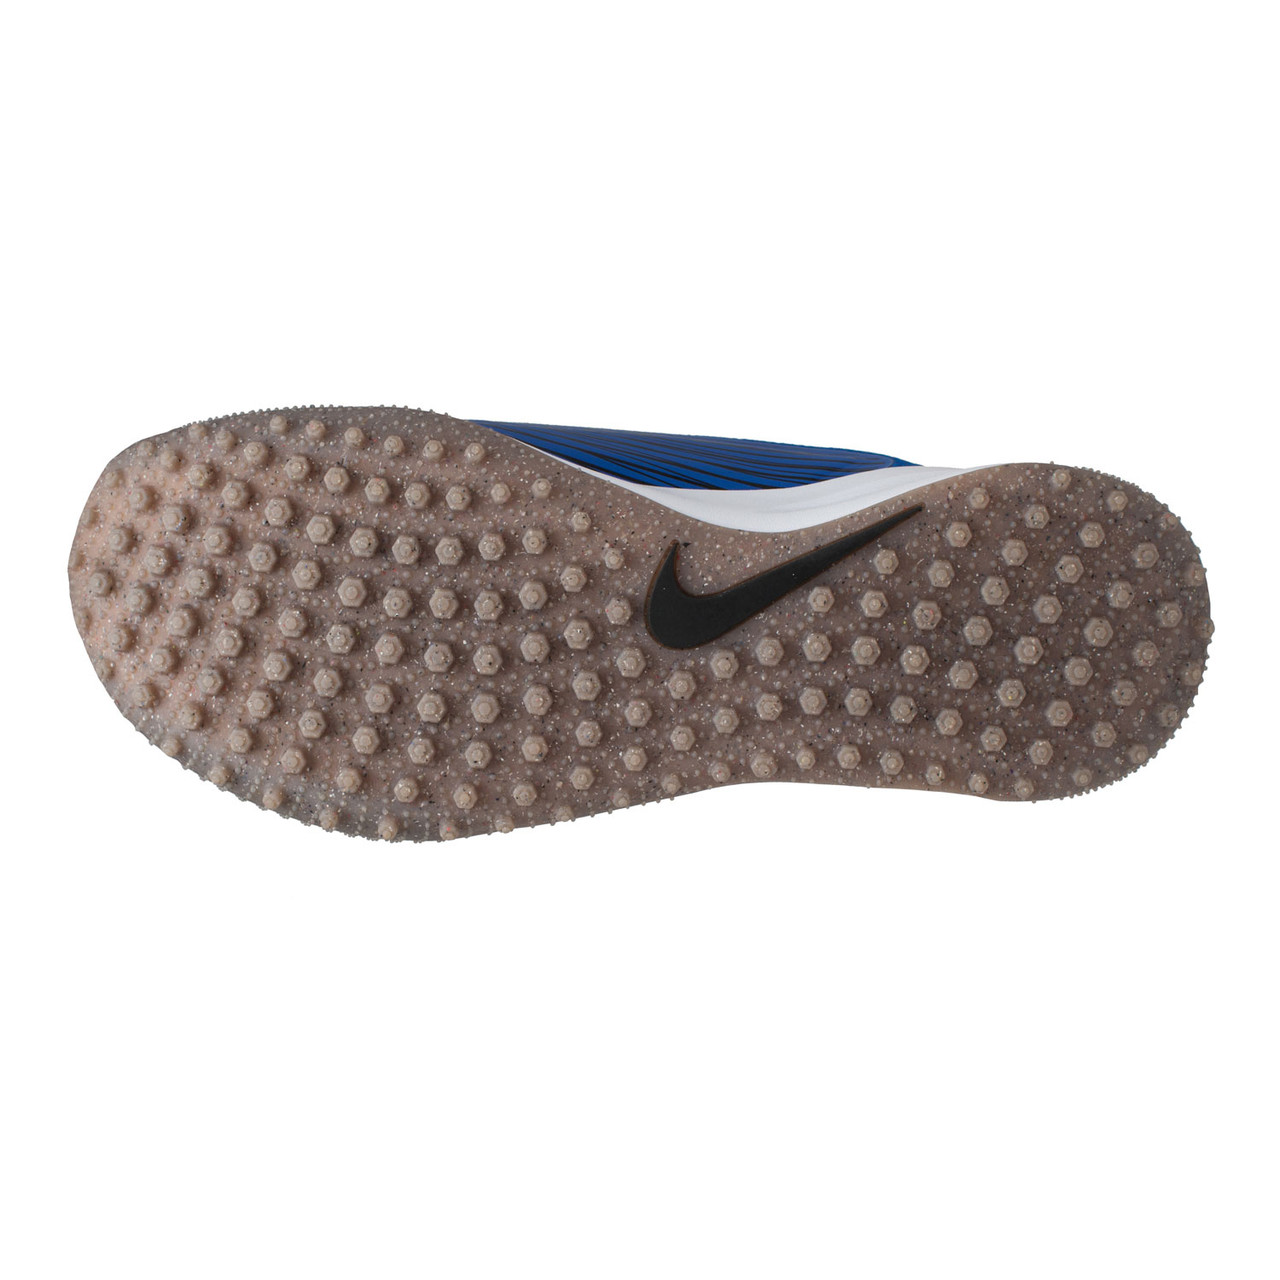 NEW Nike Vapor Drive Field Hockey Shoe, Royal/Gum Brown/White, AV6634-410,  Sz 14